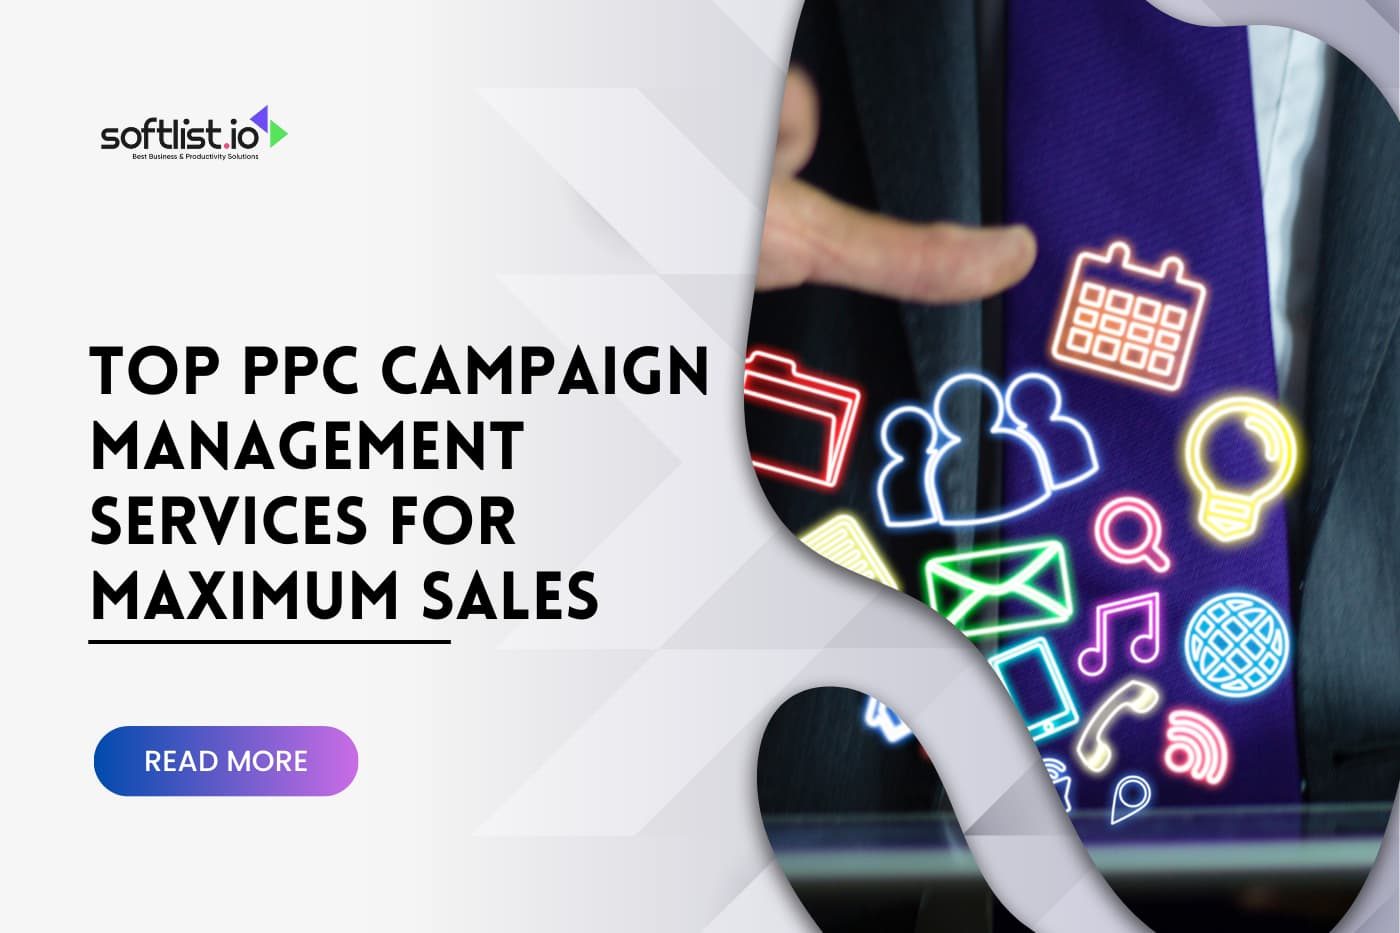 Top PPC Campaign Management Services for Maximum Sales